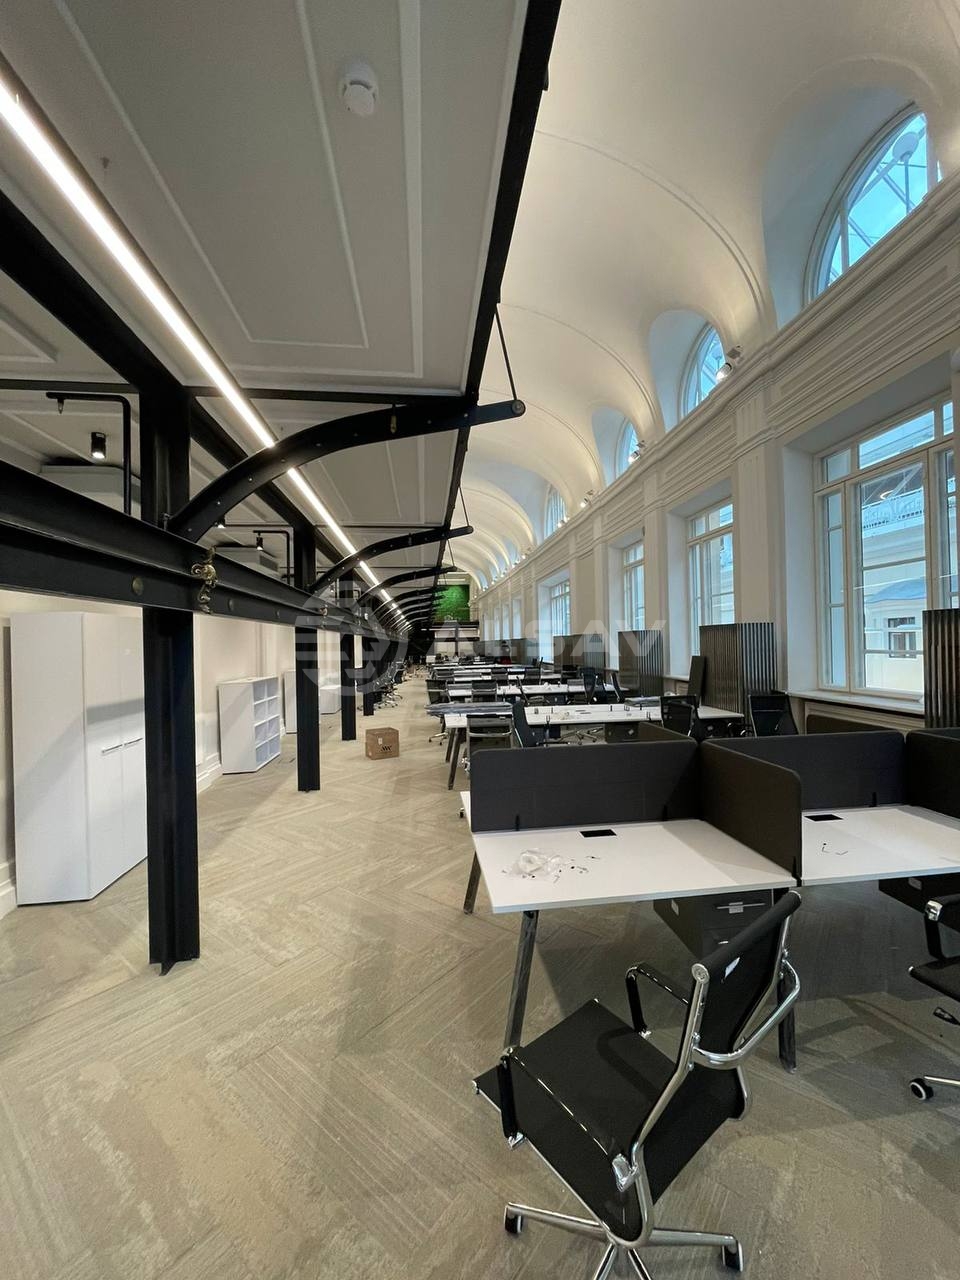 ARREDO - реализованный проект офисного помещения